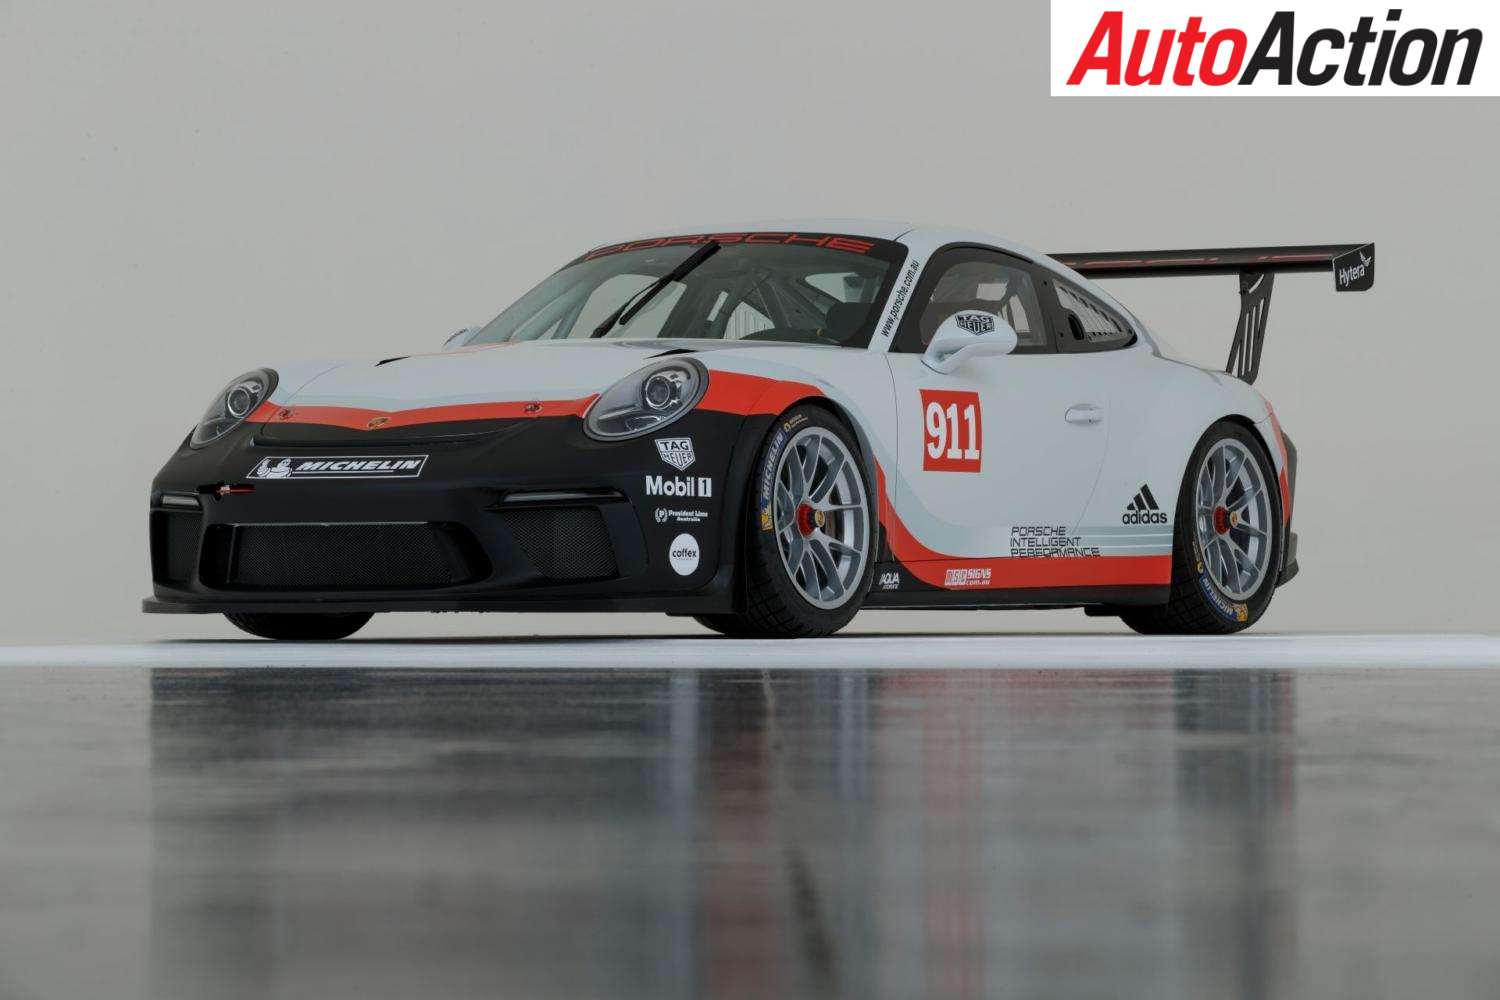 The new 2018 Porsche Carrera Cup car